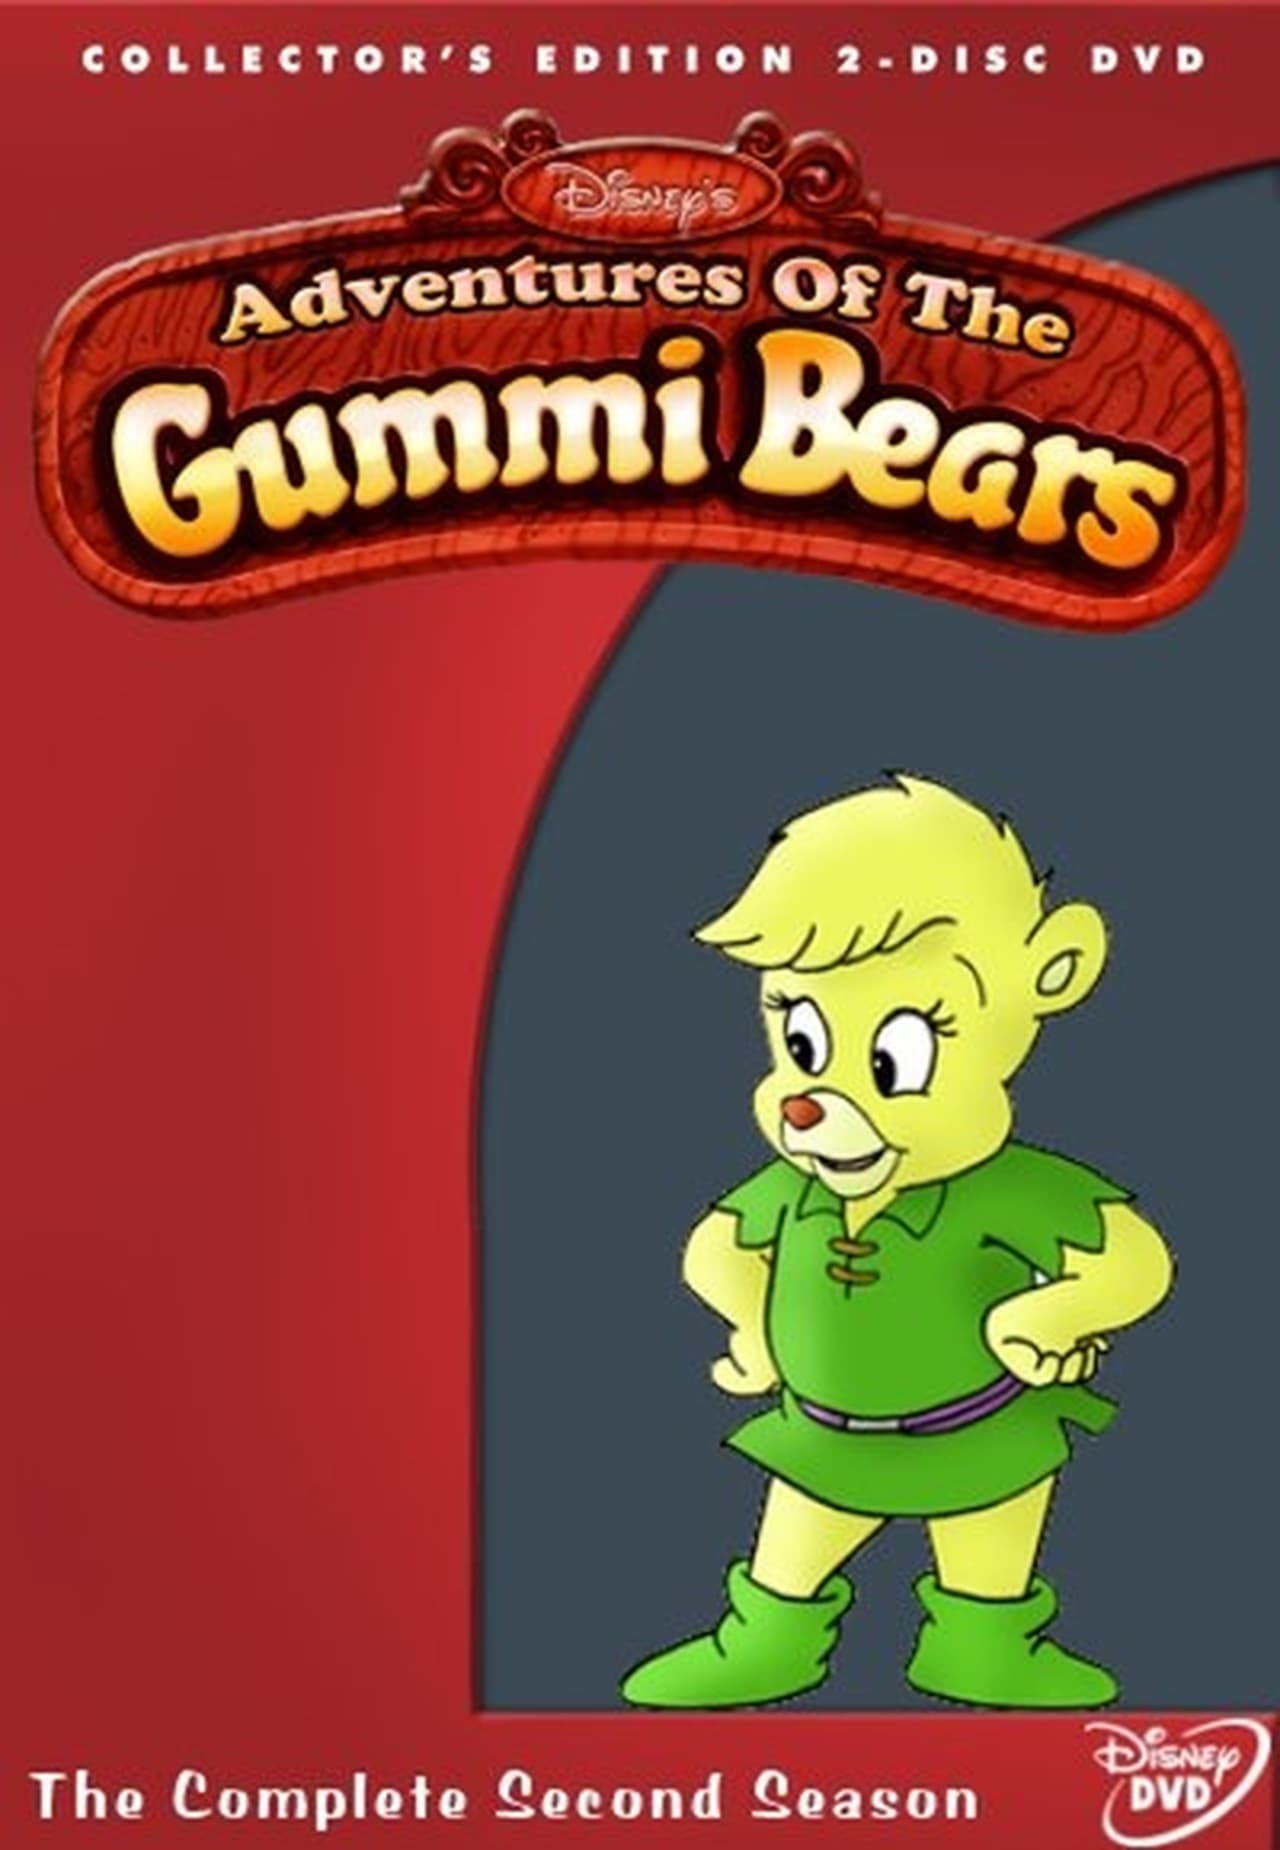 Disney's Adventures Of The Gummi Bears (1986)